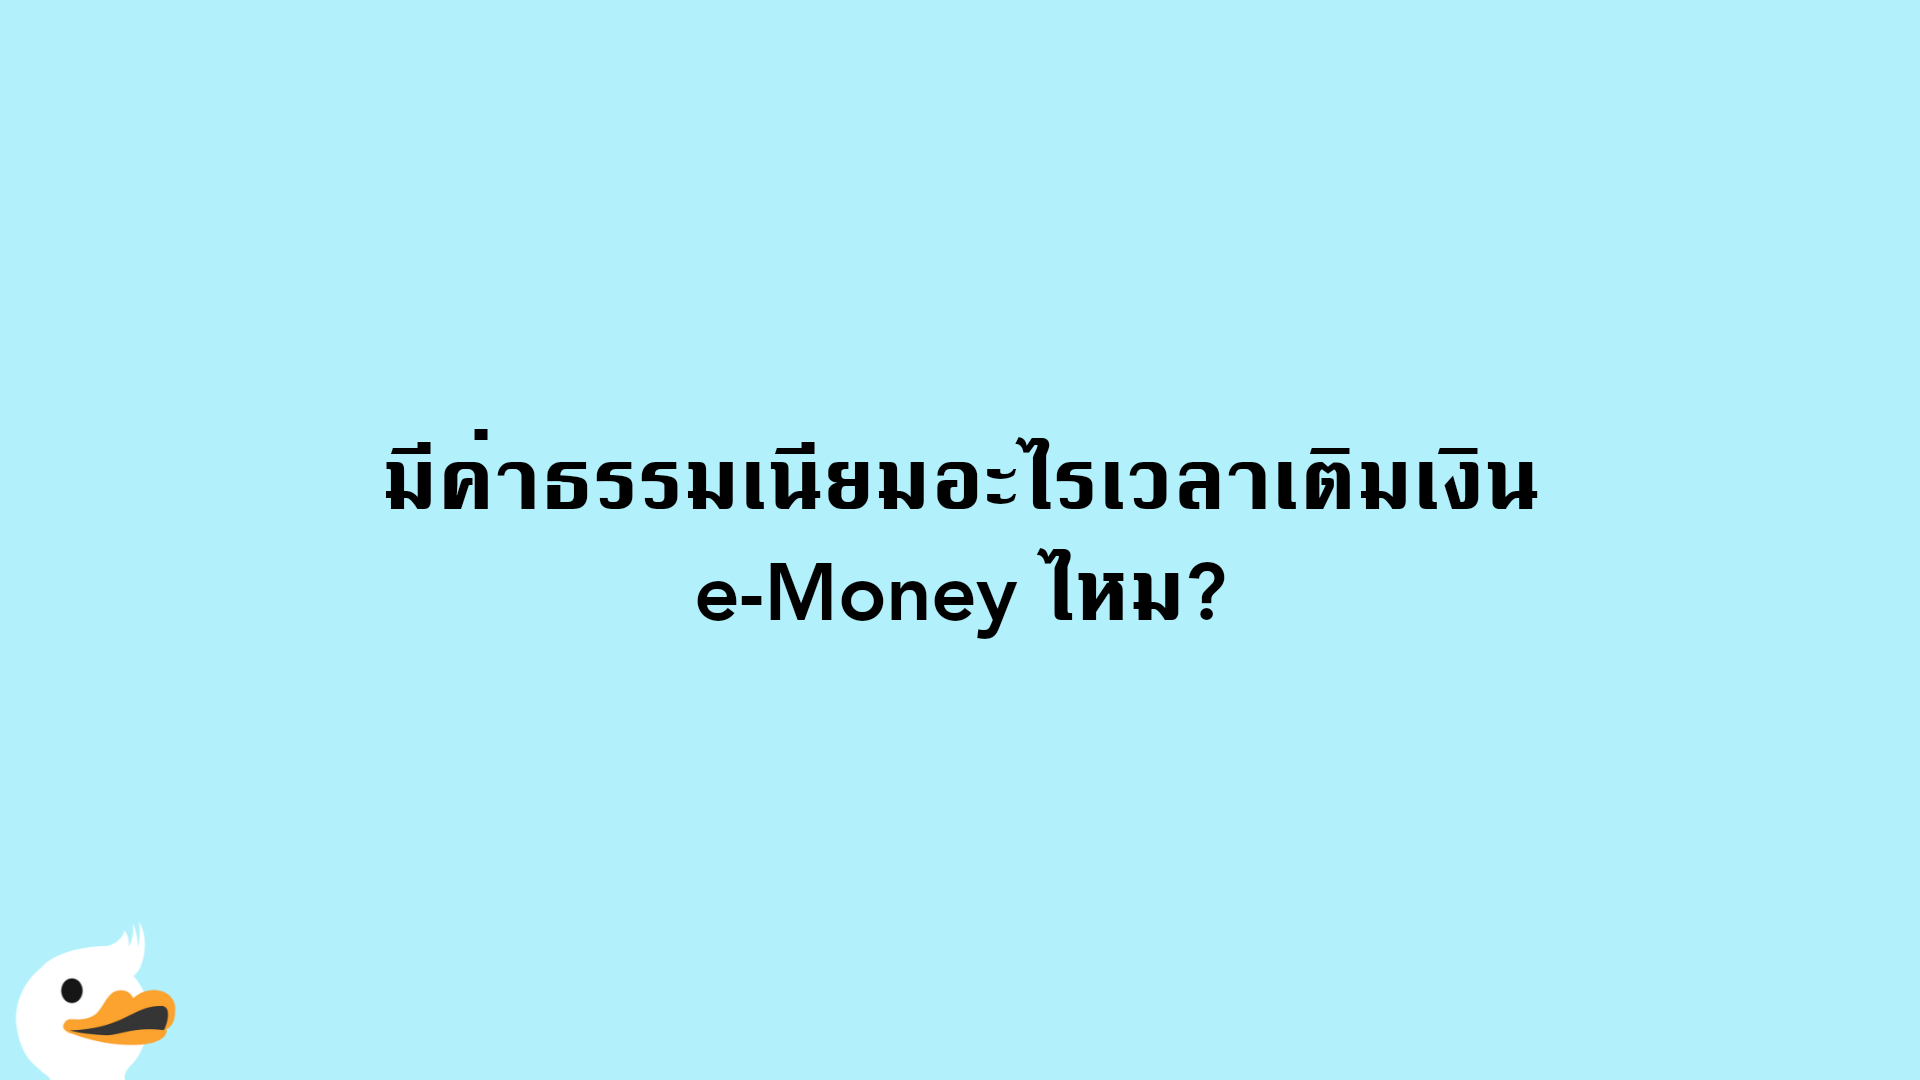 มีค่าธรรมเนียมอะไรเวลาเติมเงิน e-Money ไหม?